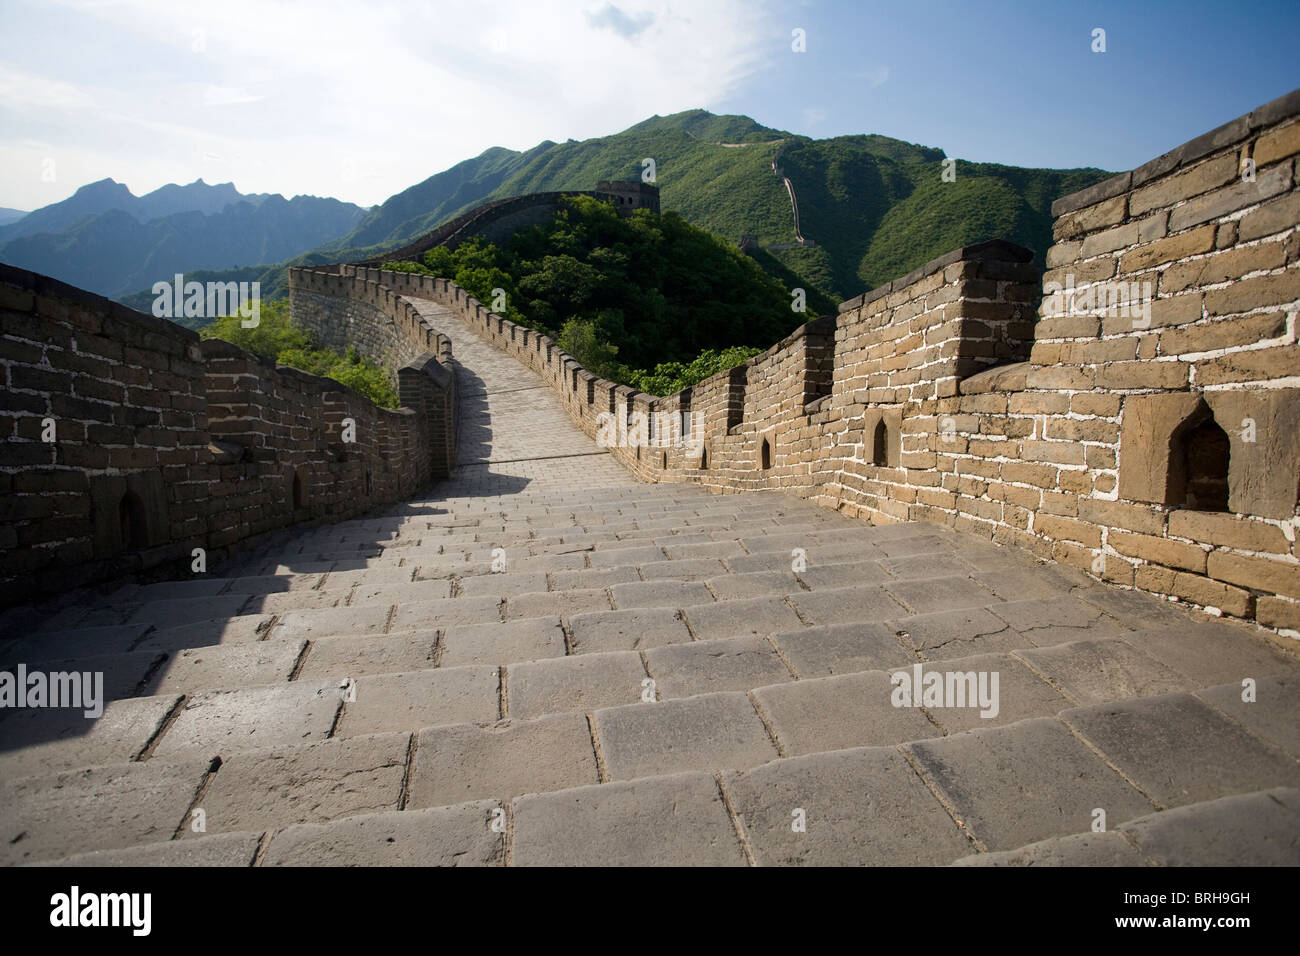 The Great Wall of China, Mutianyu Stock Photo